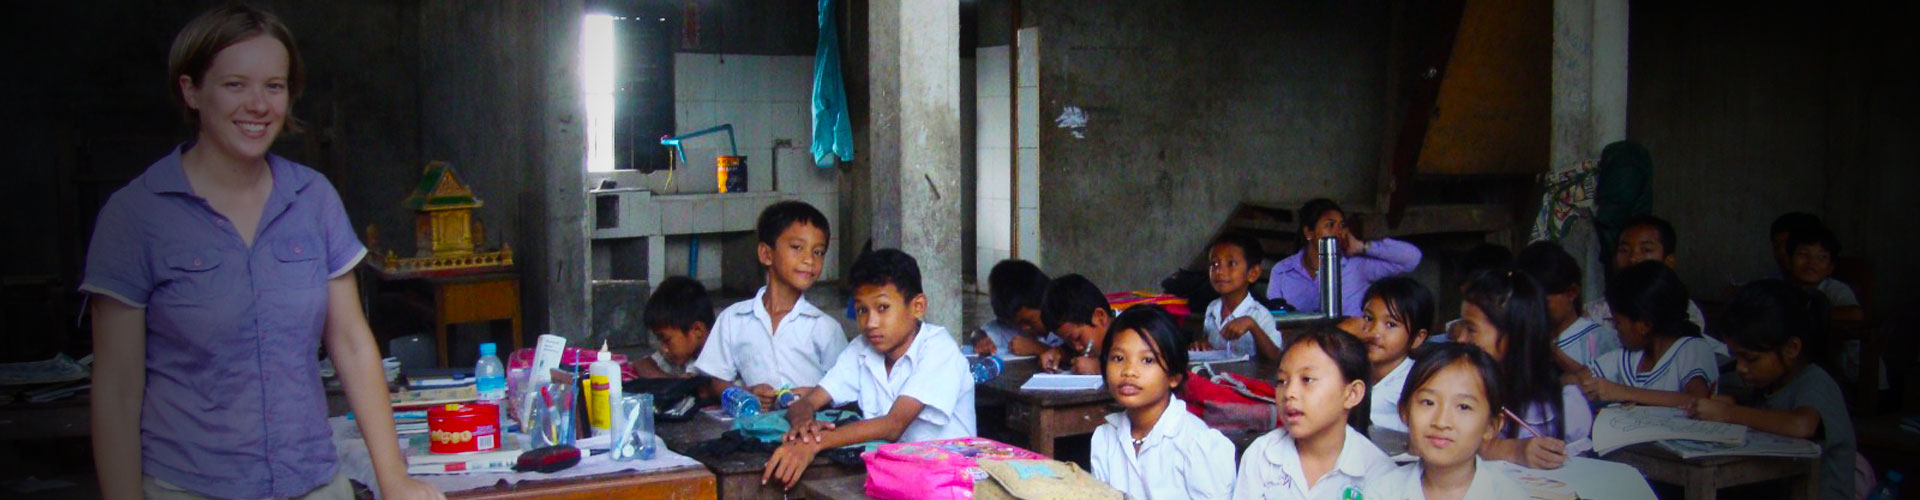 Programa de Voluntariado de Enseñanza de Inglés en Camboya